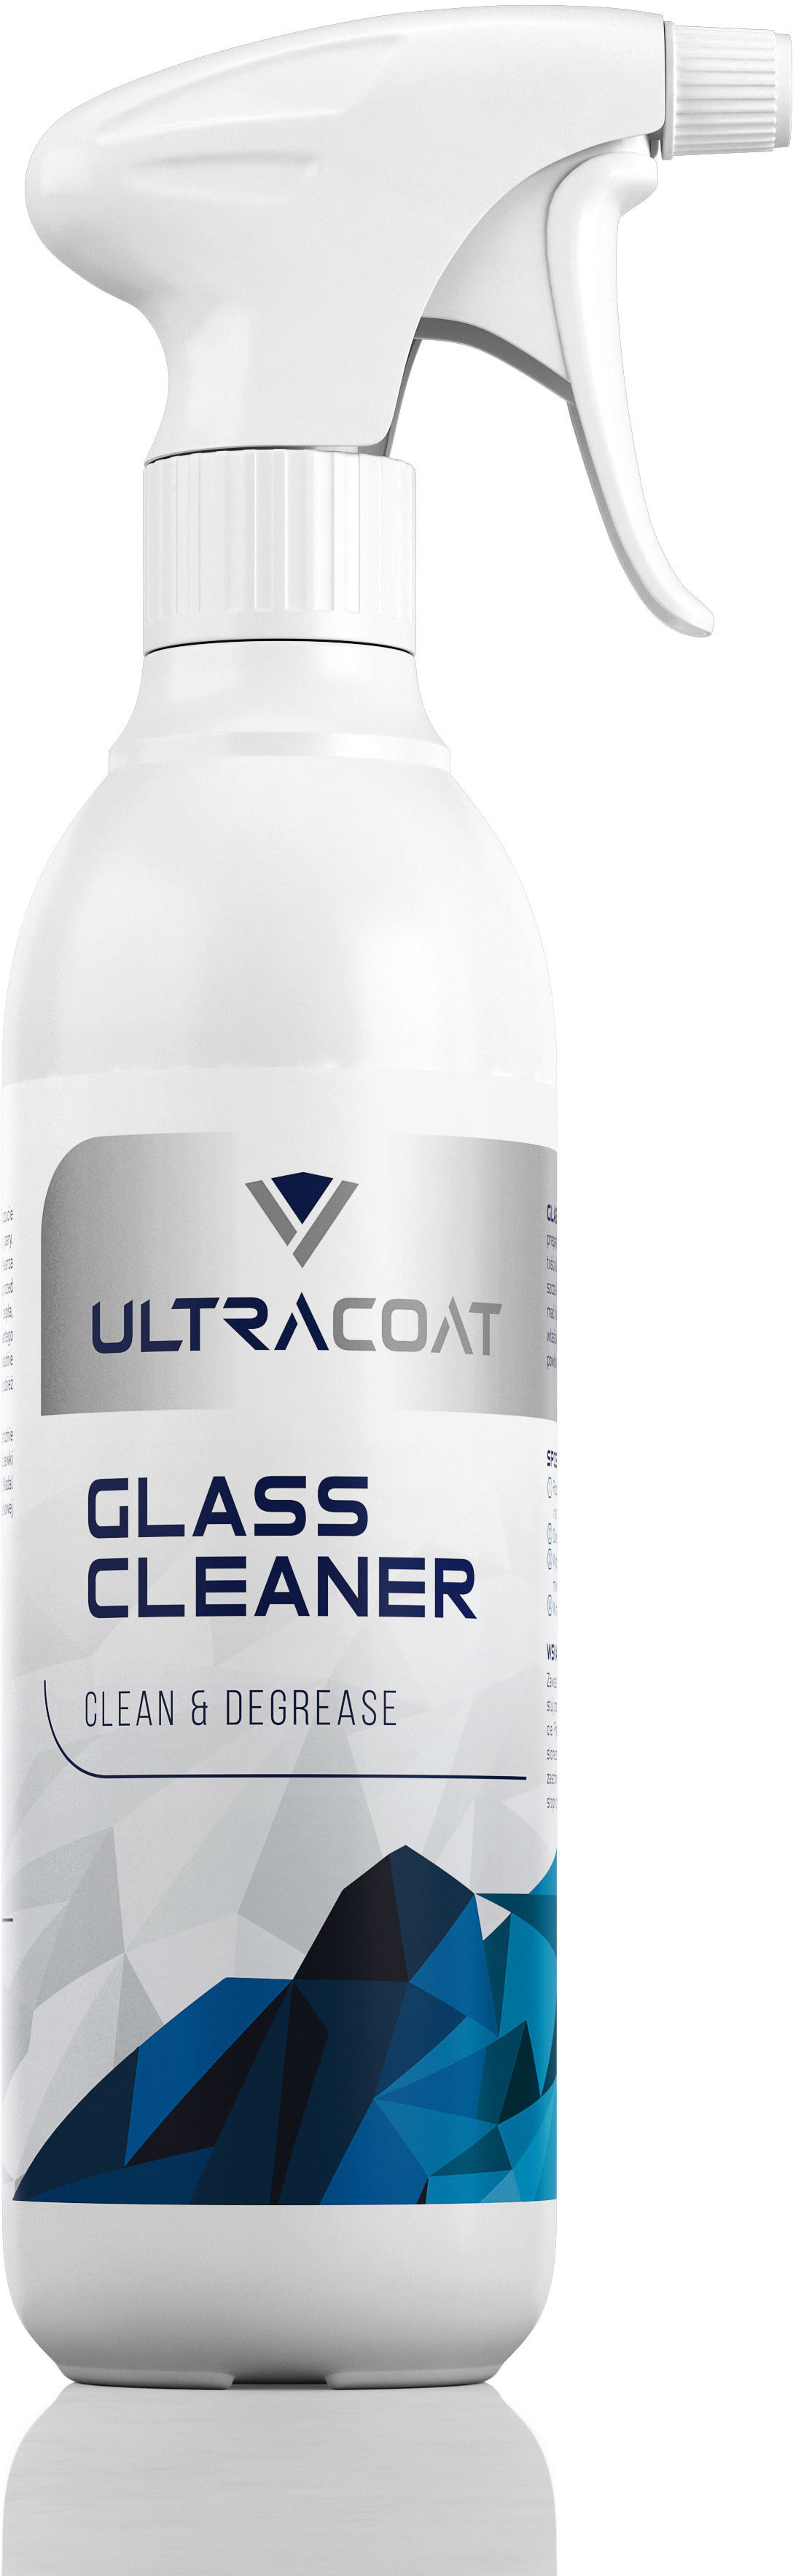 Ultracoat Ultracoat Glass Cleaner  niezwykle skuteczny preparat do mycia szyb 500ml ULT000008